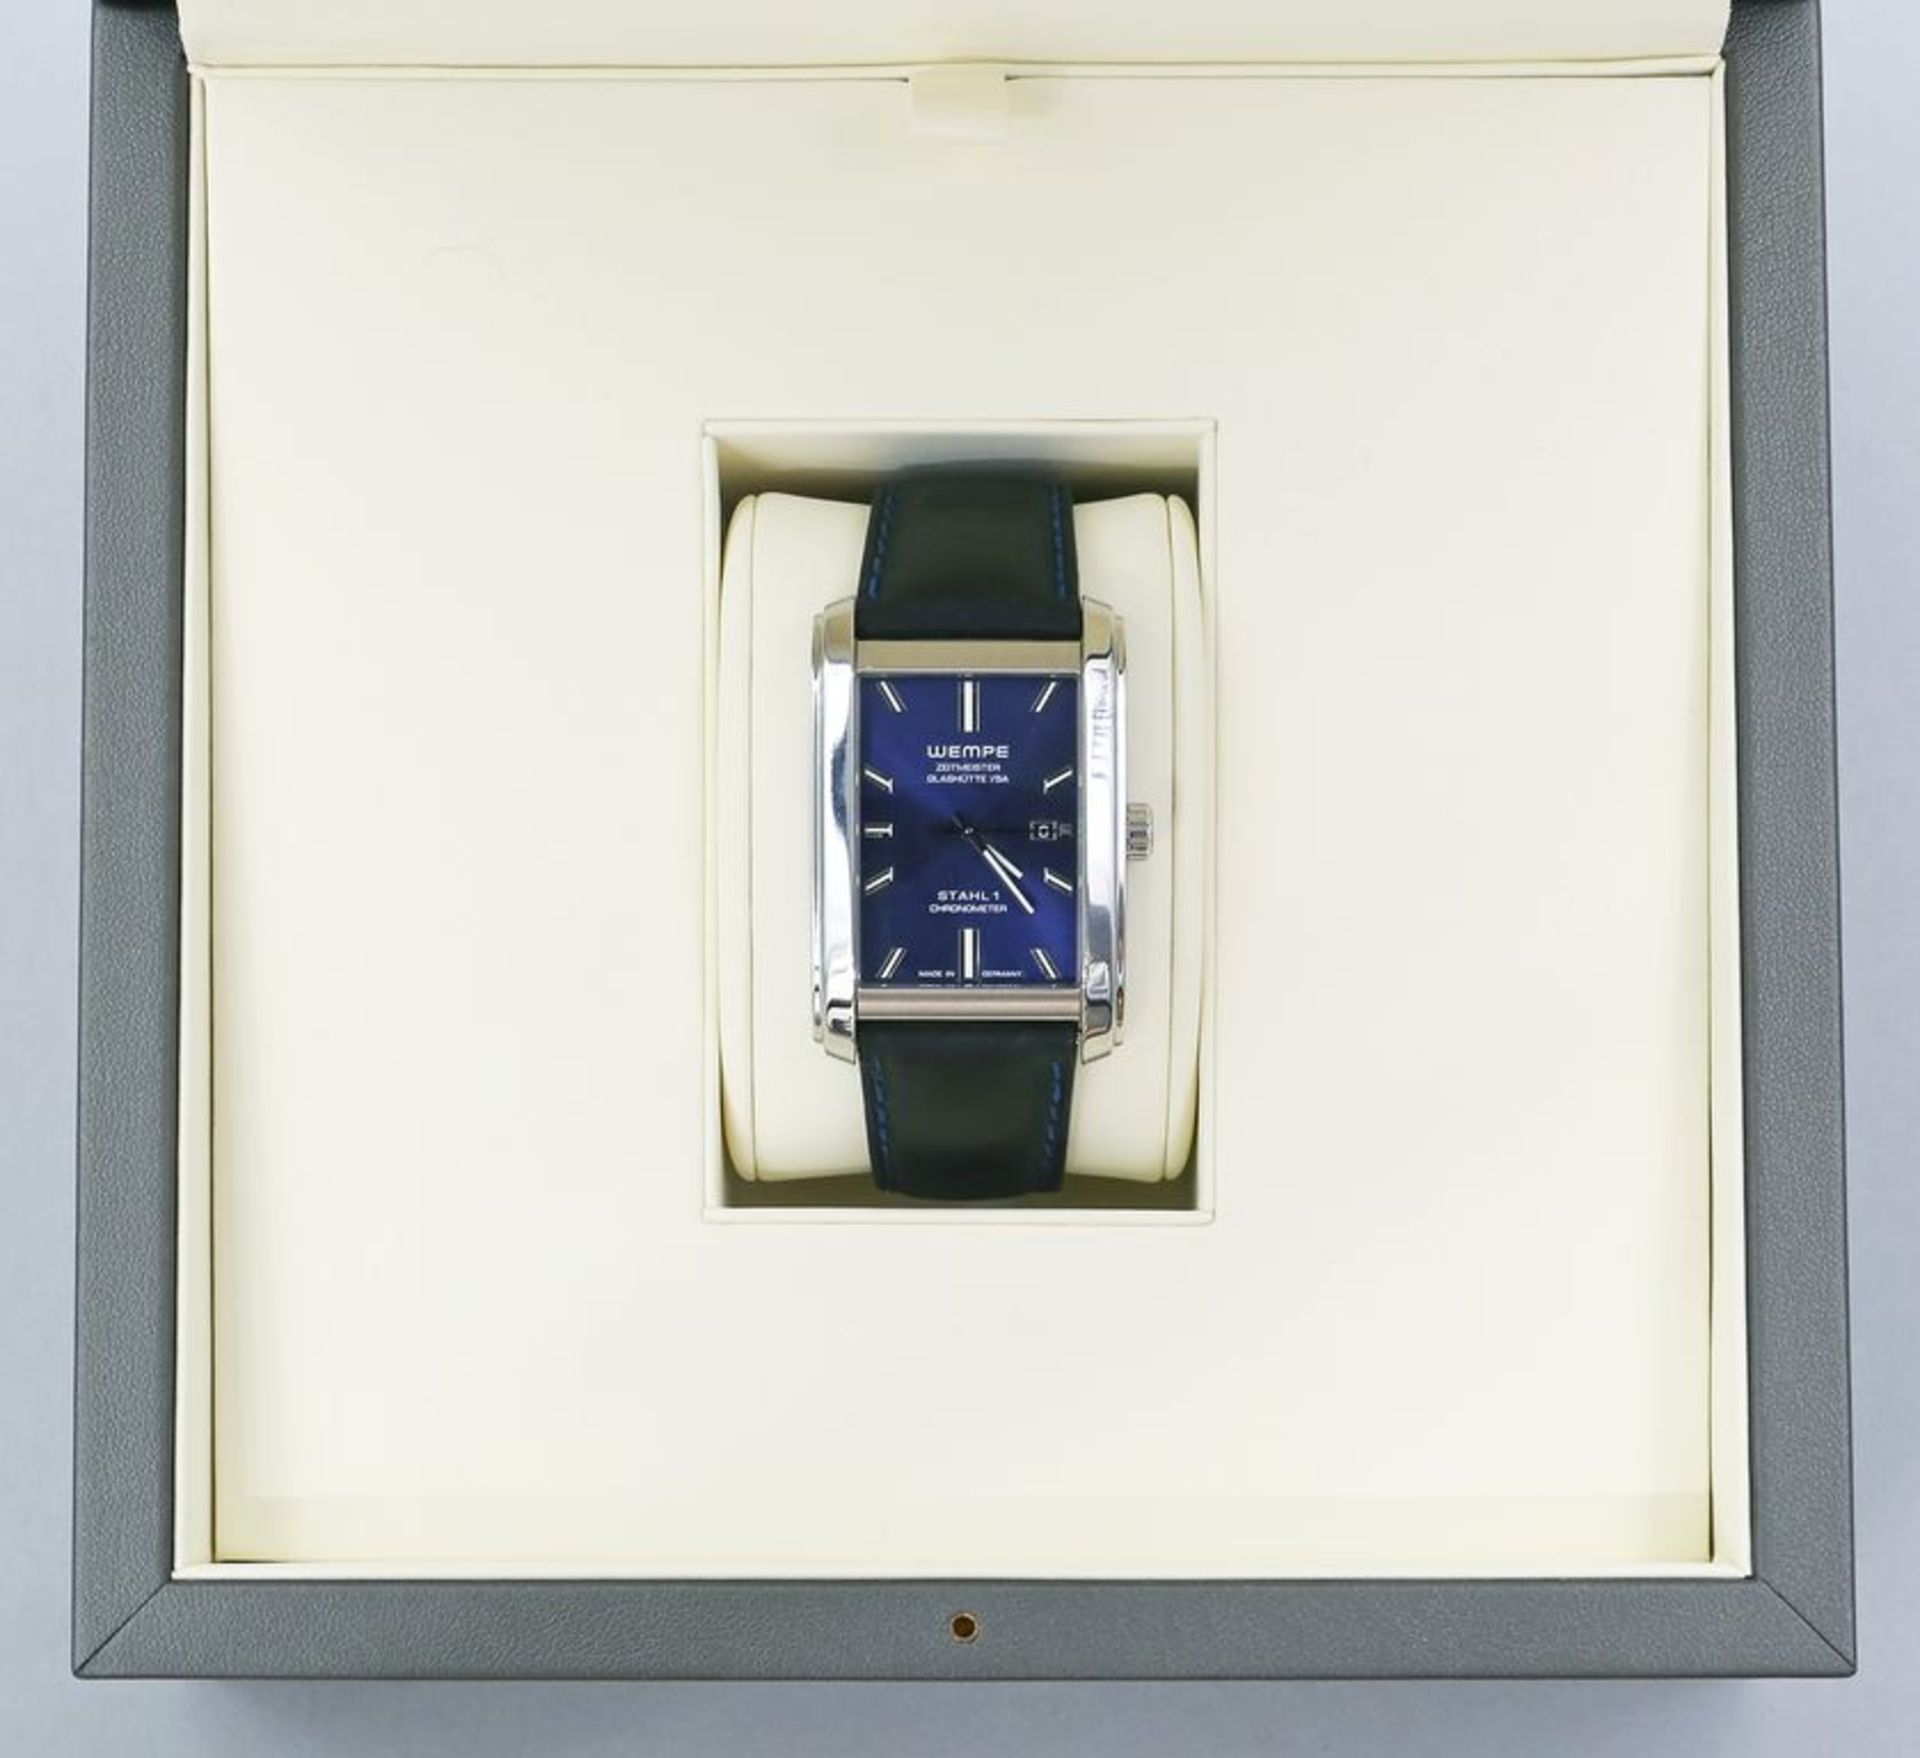 Limitierter Herrenchronometer "STAHL 1 Grönemeyer", Wempe/Glashütte. Edelstahlgehäuse.